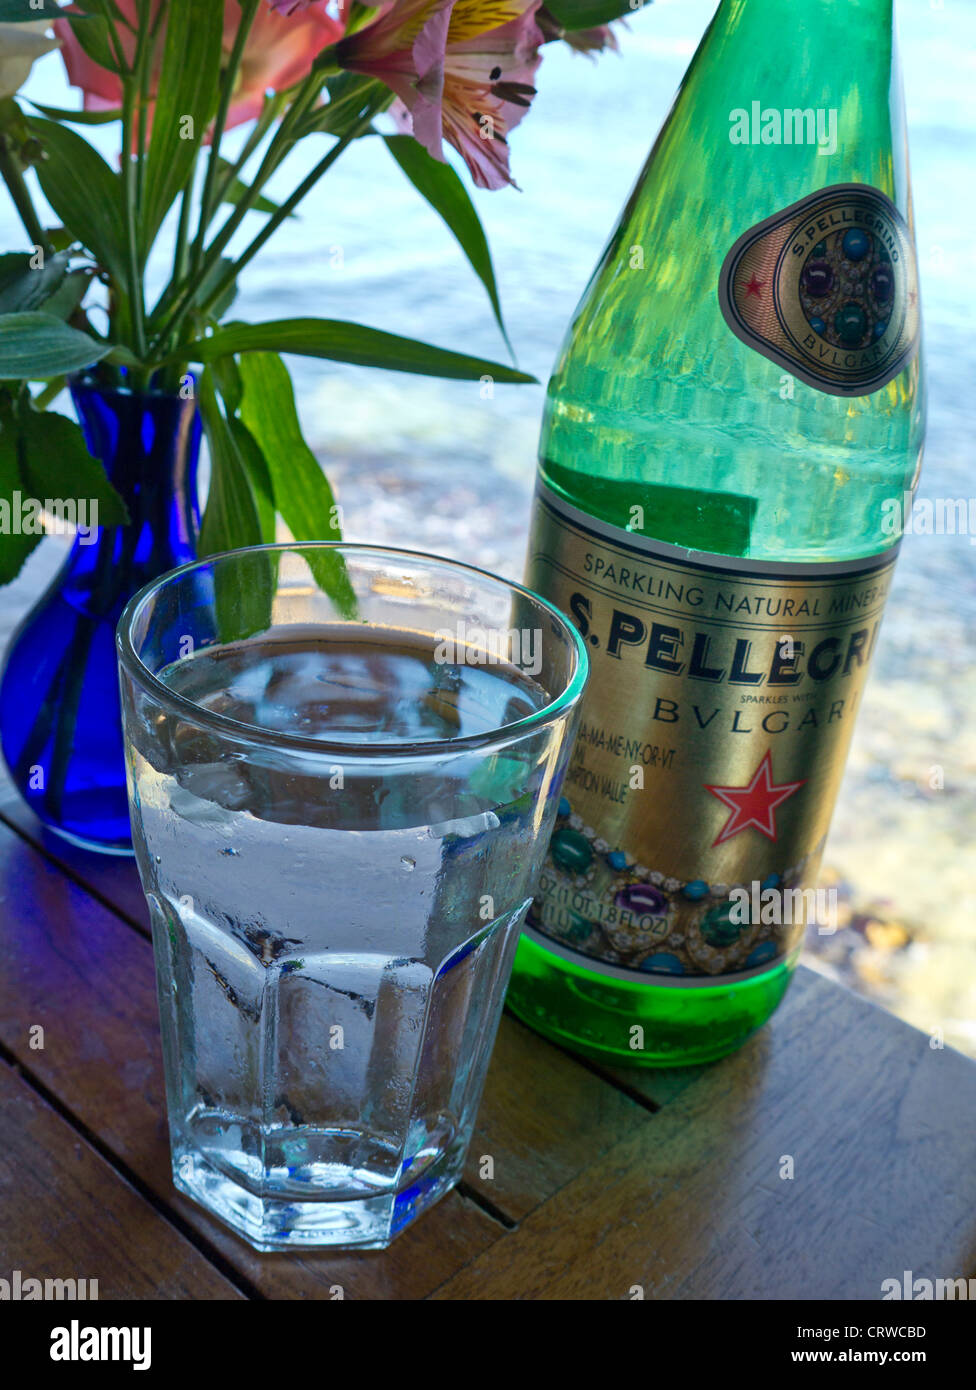 Pellegrino Bulgari Luxus in Flaschen Wasser und Glas auf floral Restauranttisch mit Blick aufs Meer Stockfoto